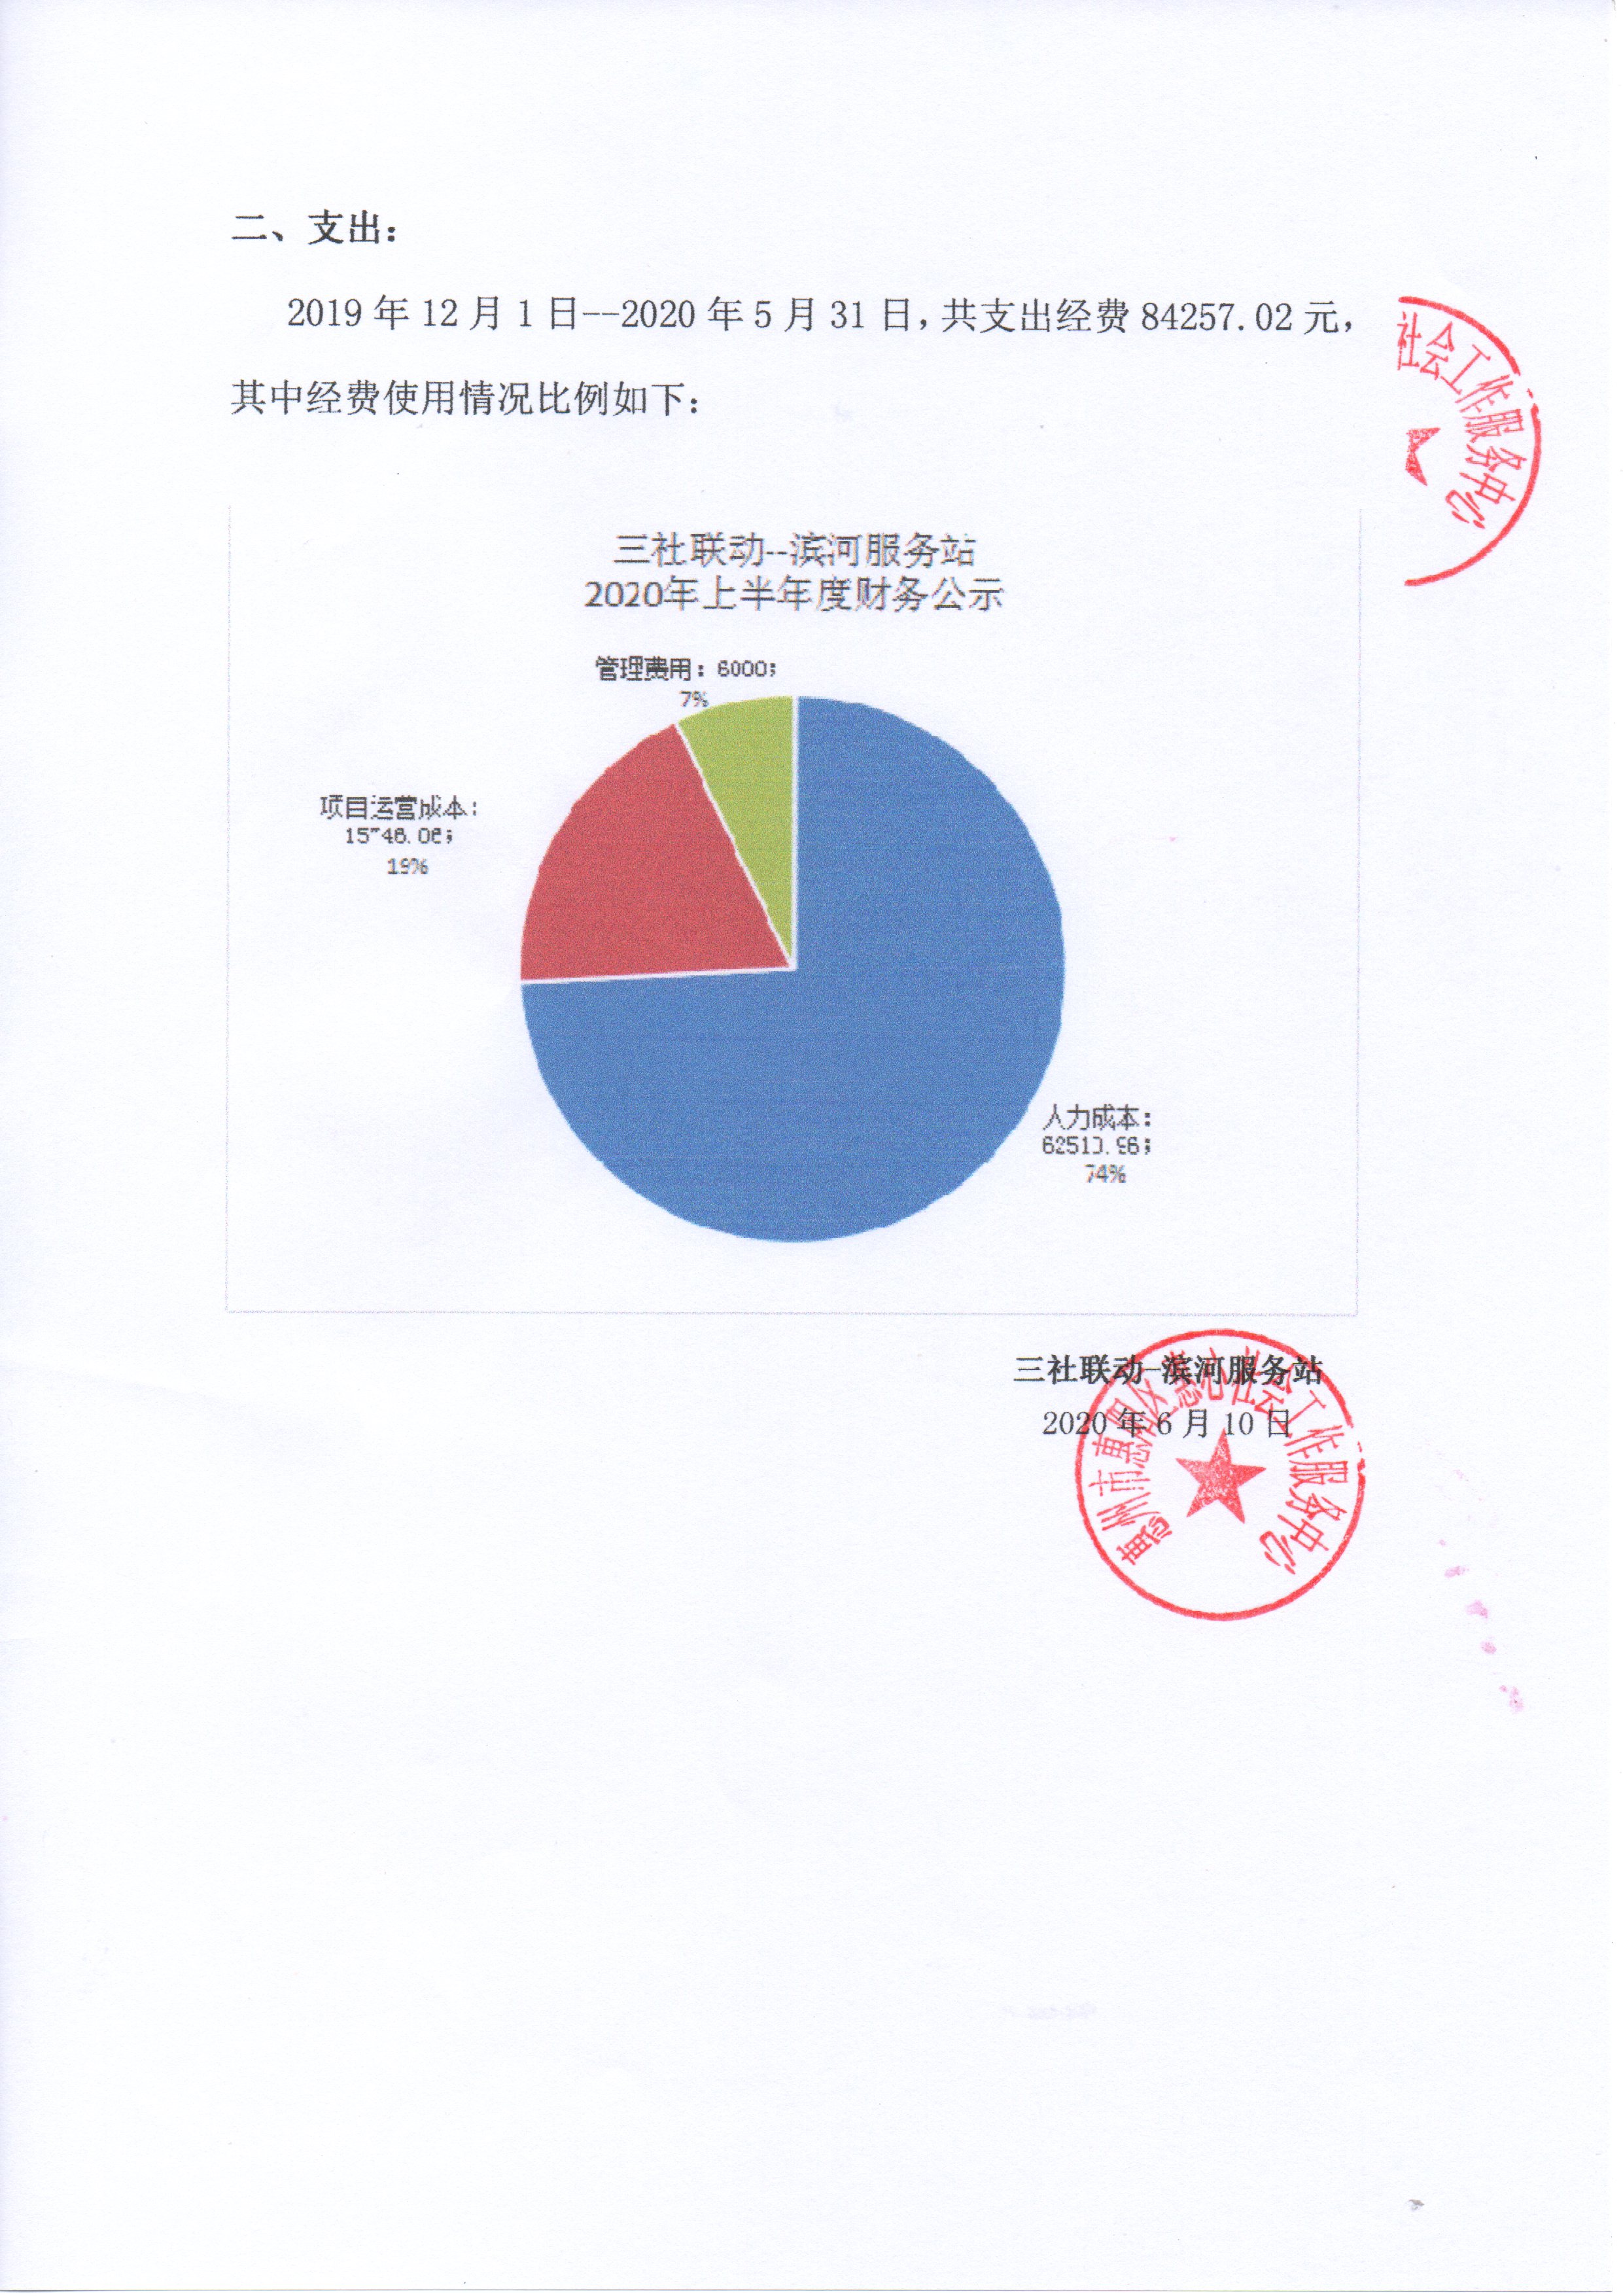 三社联动-滨河服务站20年上半年财务公示